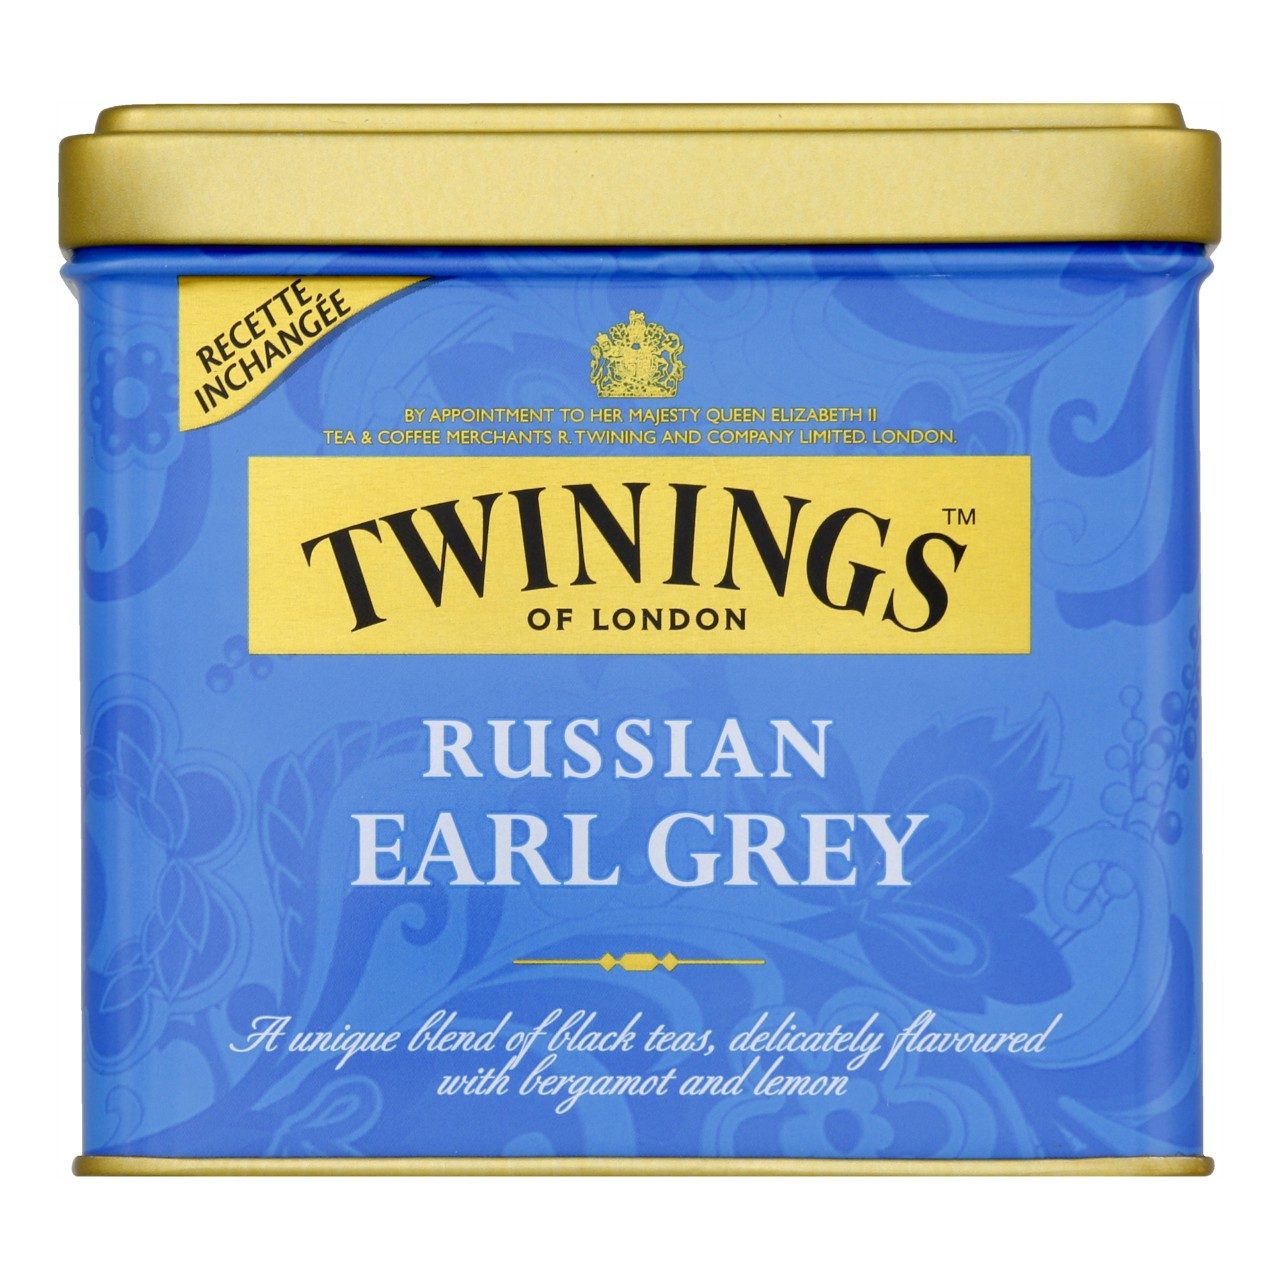 Russian earl grey thee